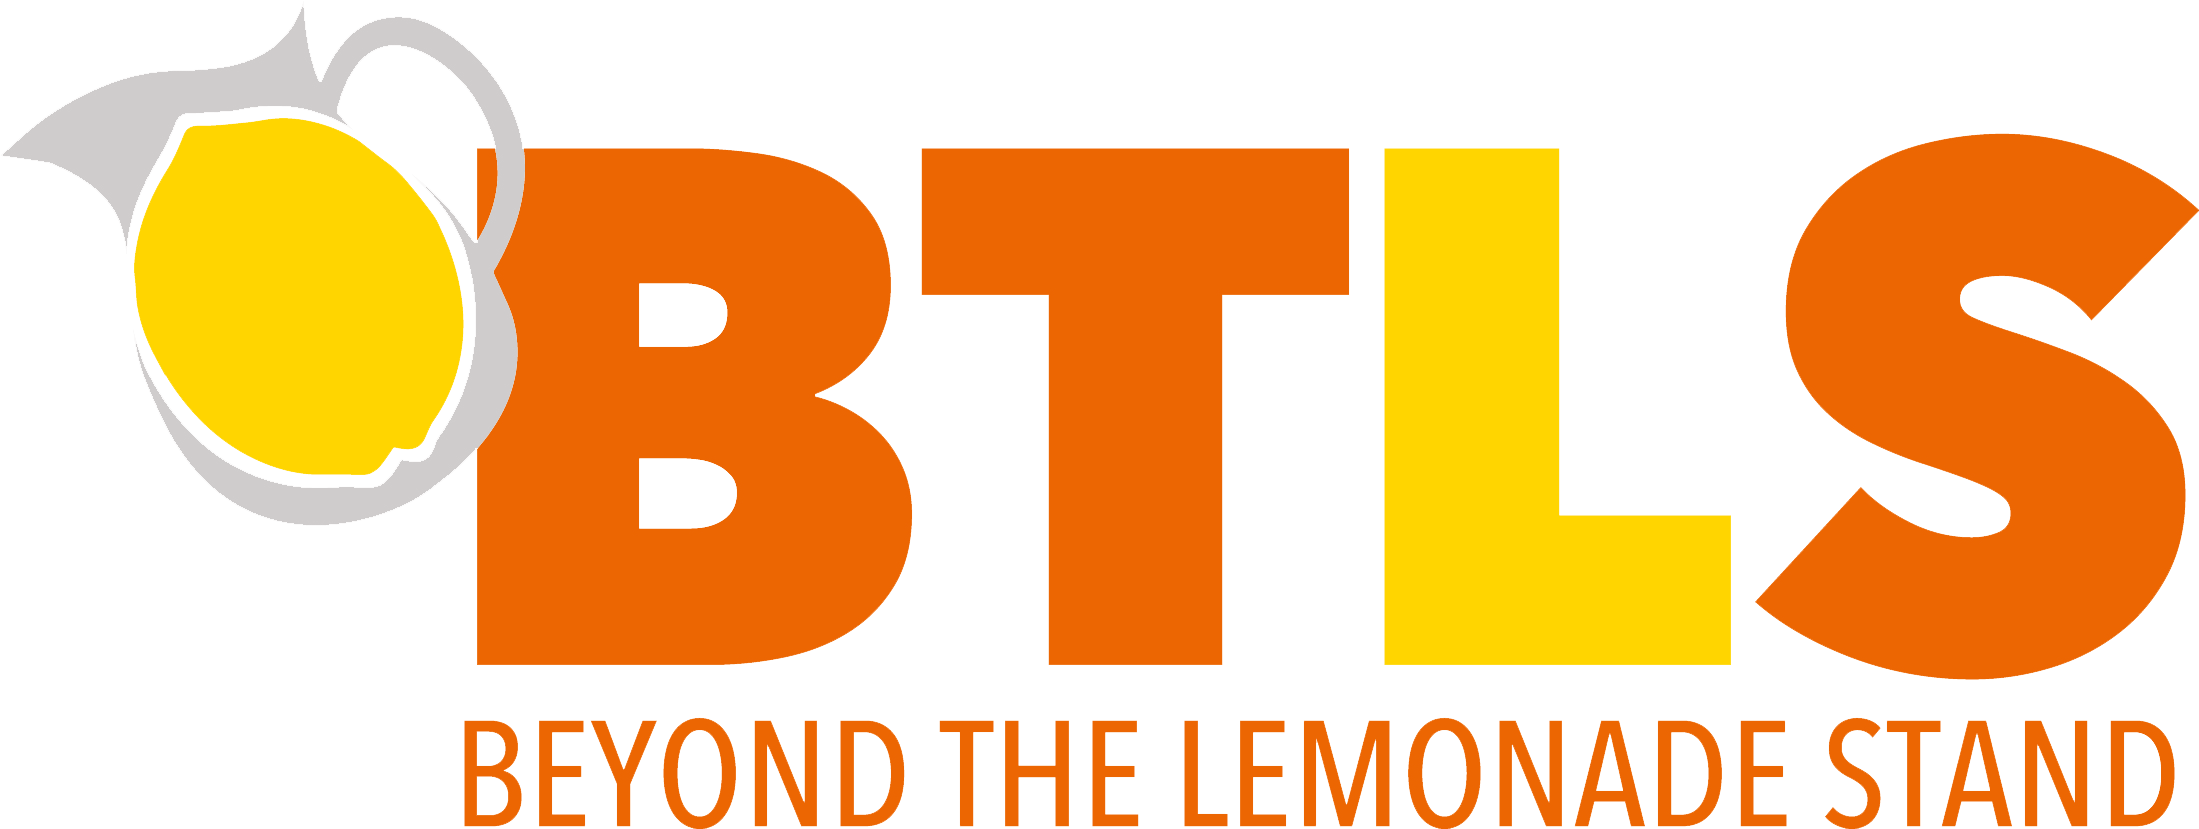 lemonade clipart entrepreneurship